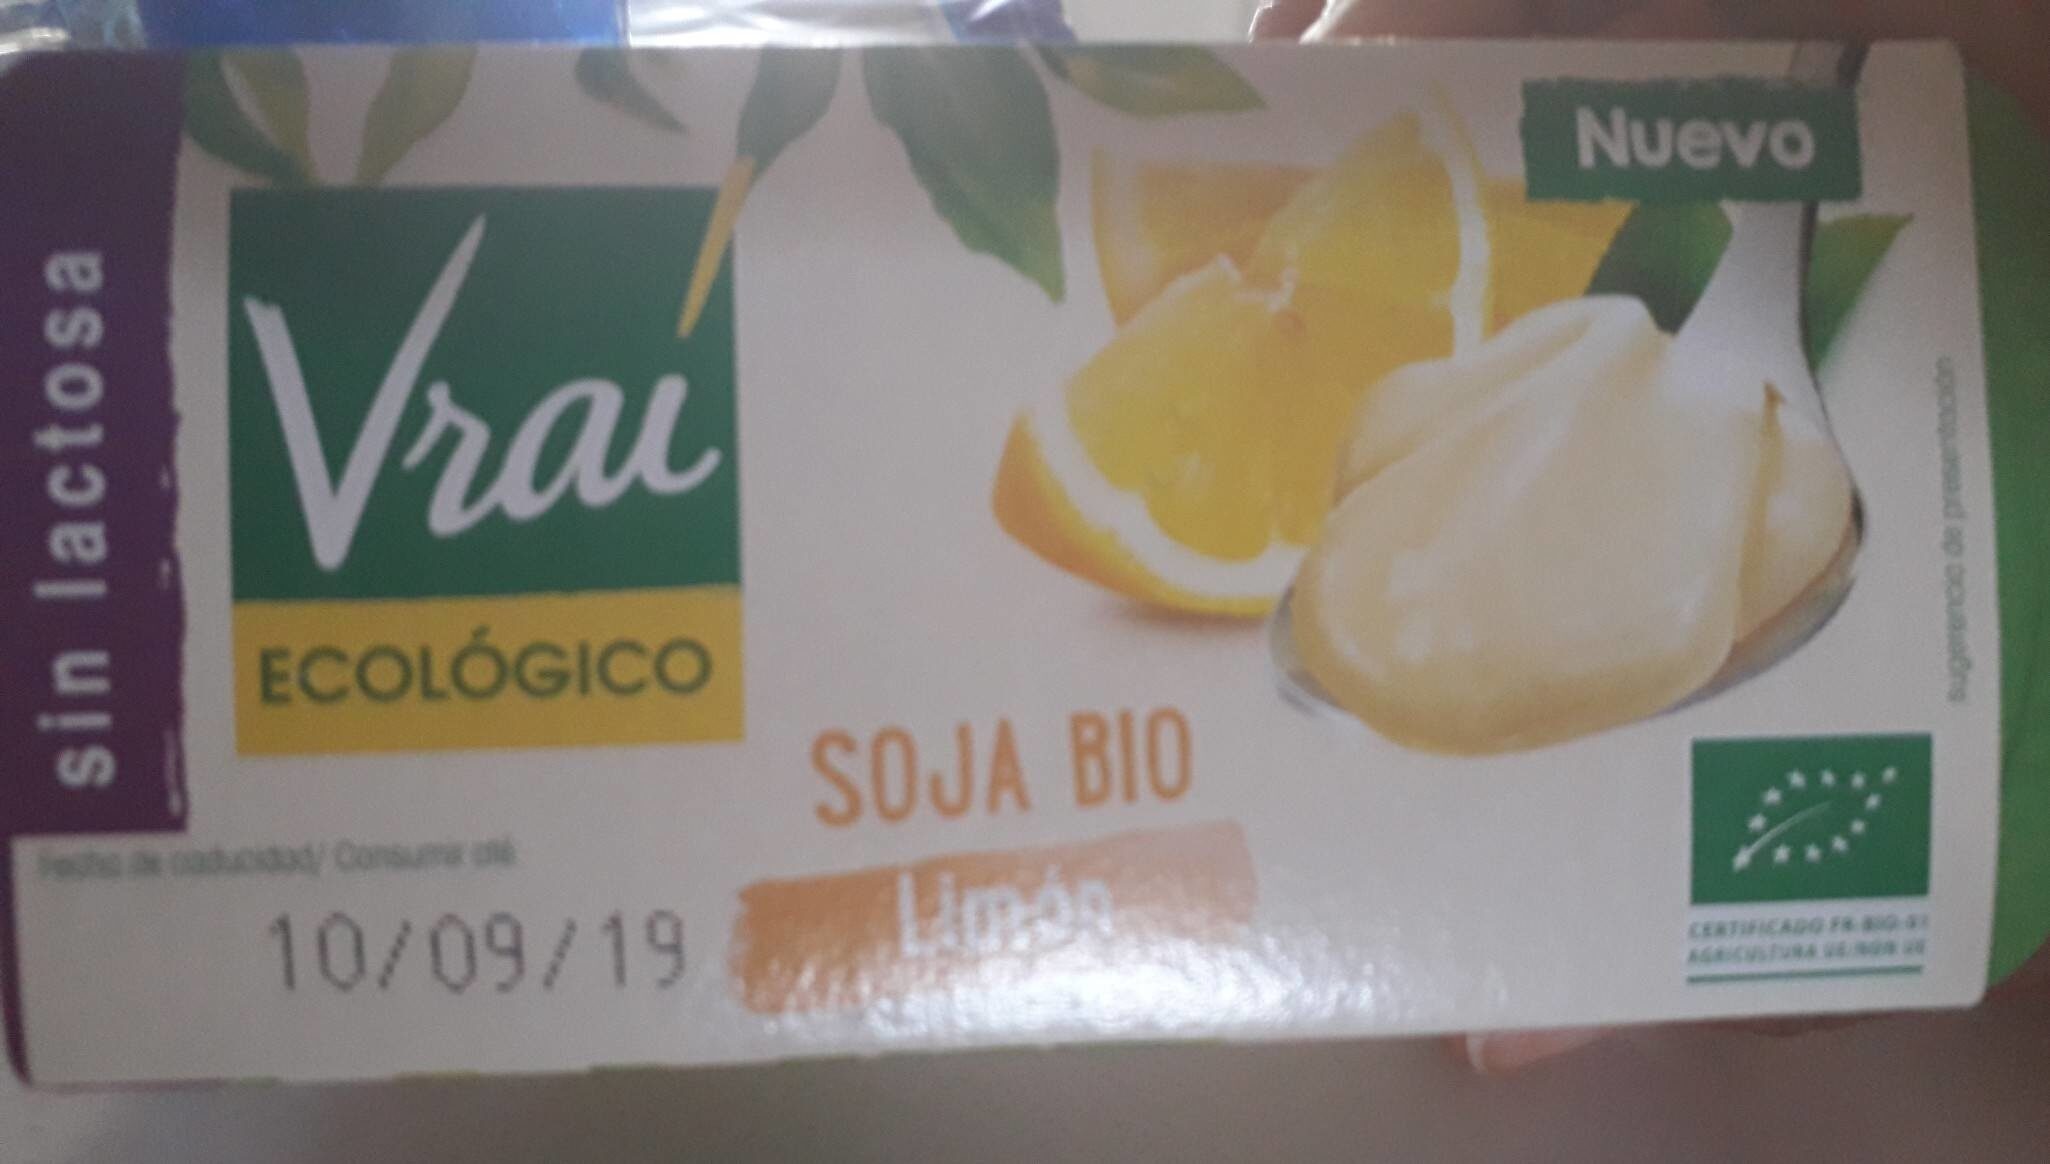 Soja bio limón - Producte - es